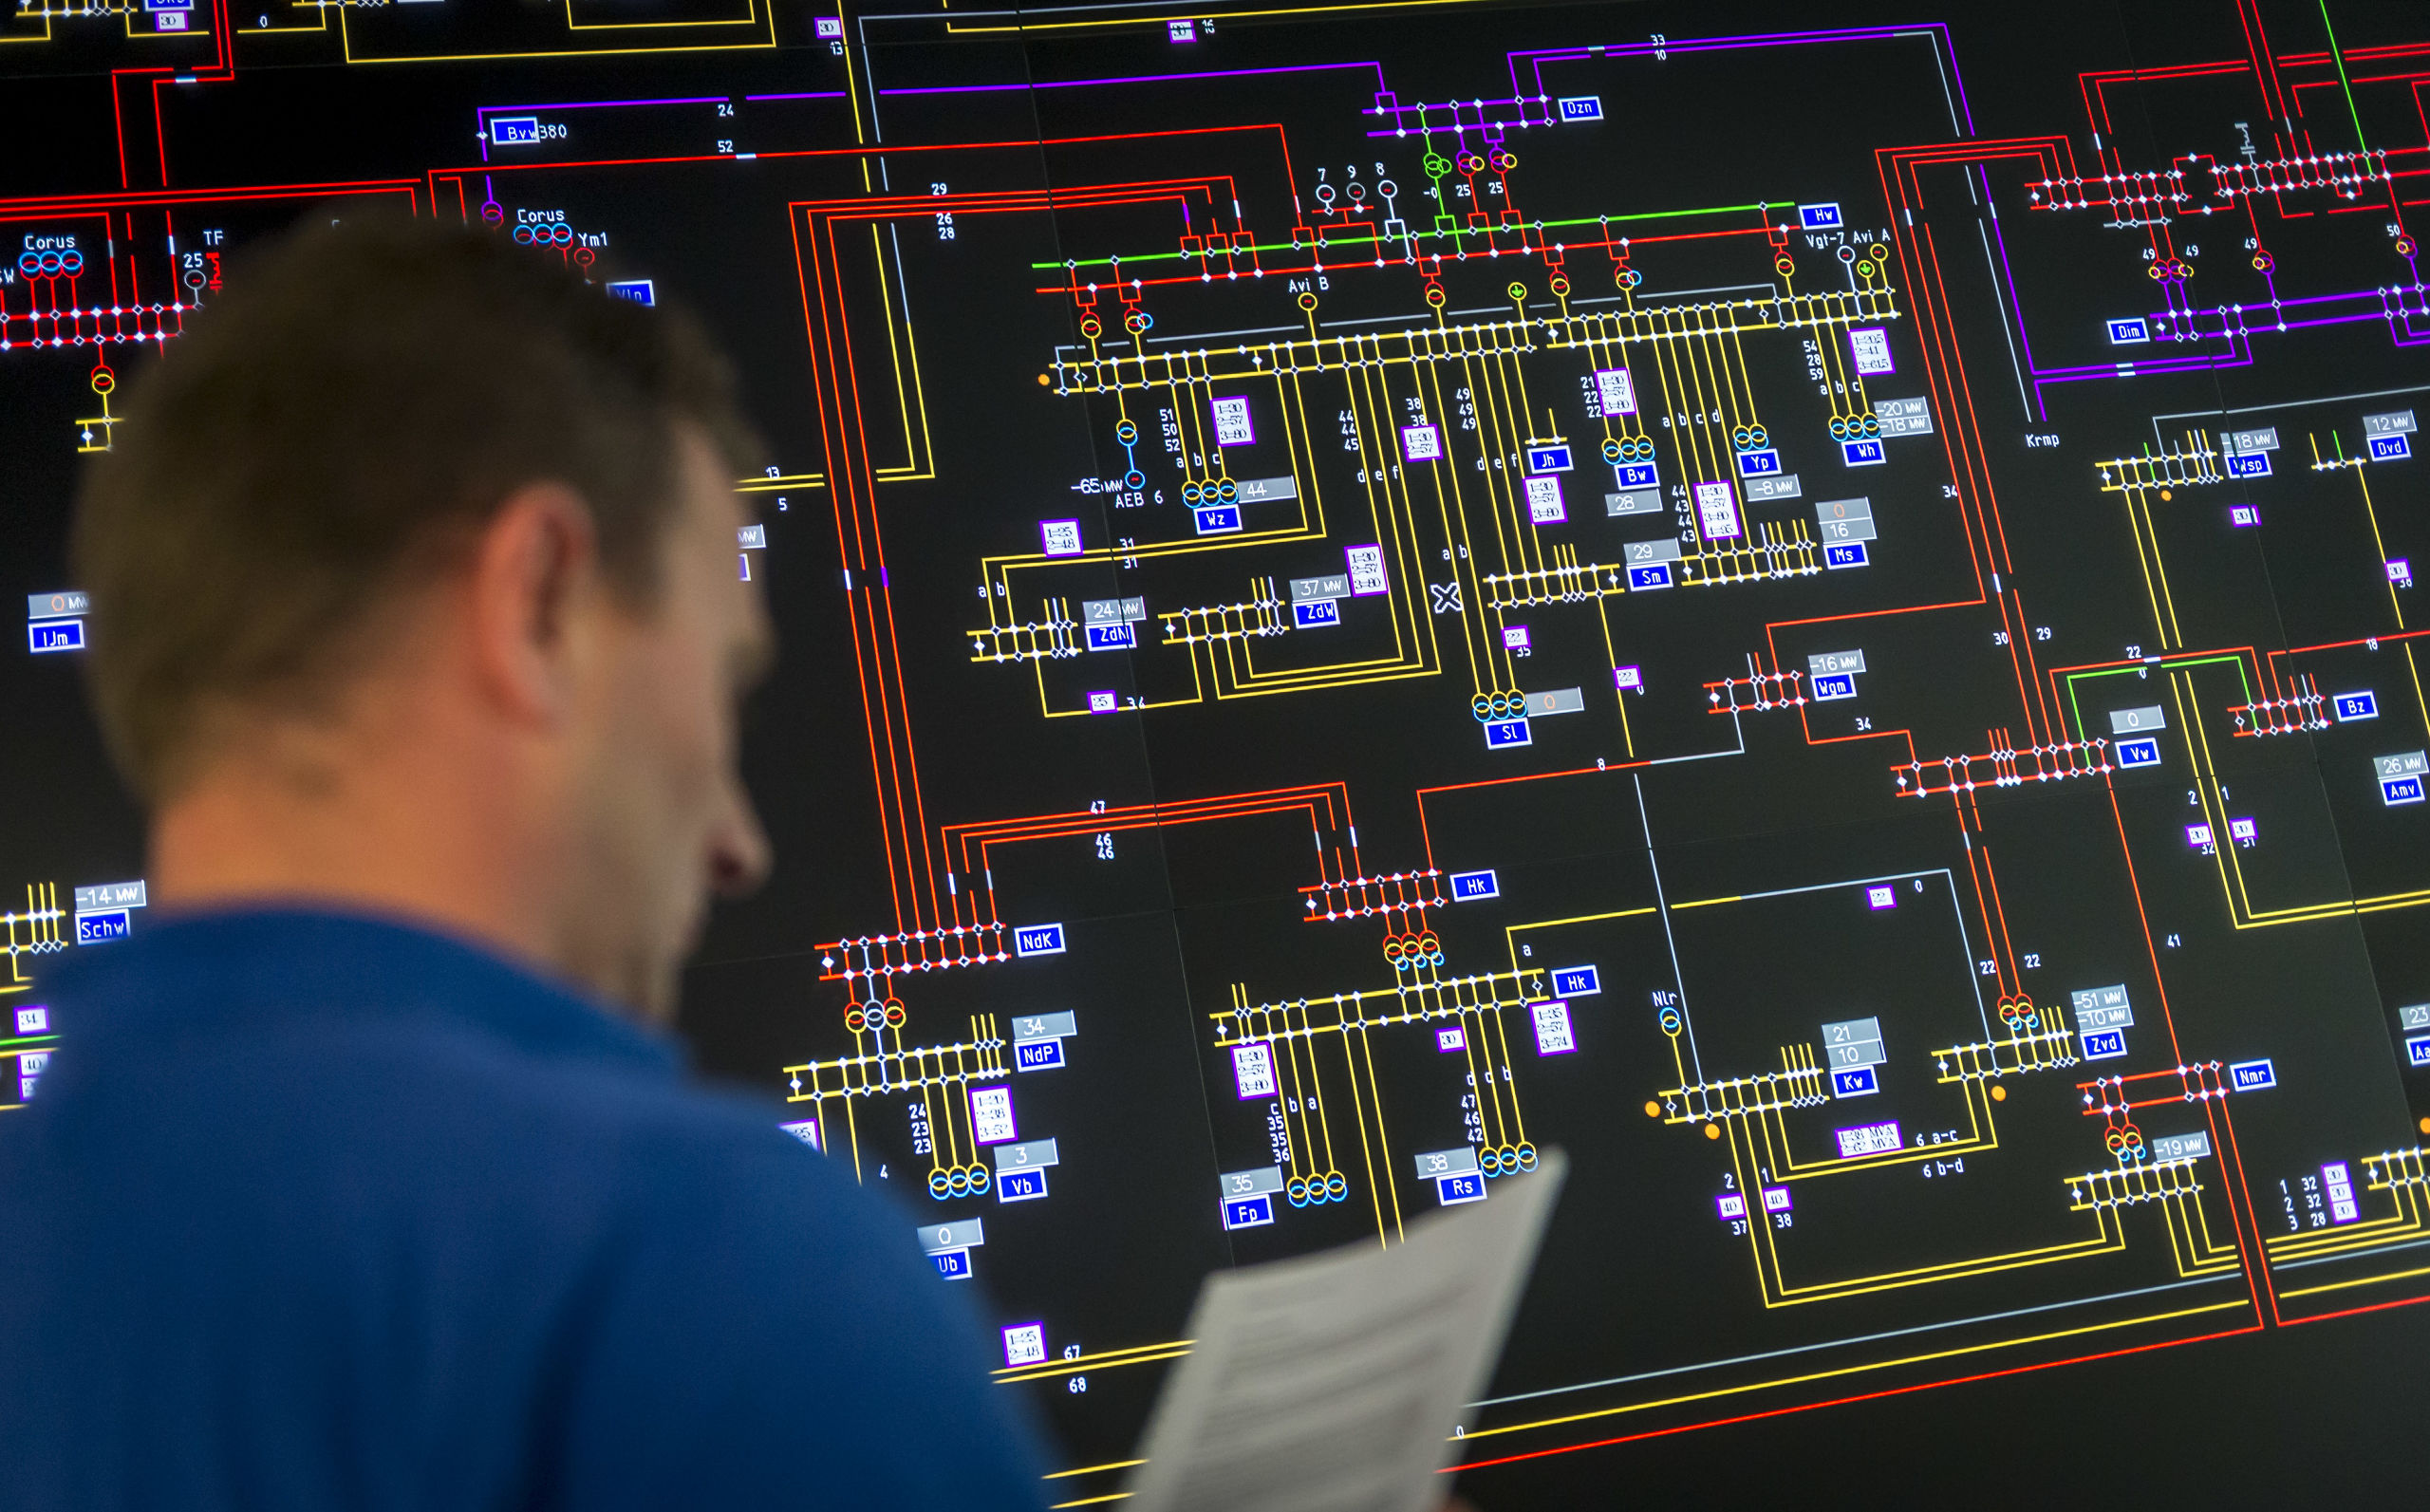 2014-09-04 13:51:28 ANRHEM - De controlekamer van Liander, de grootste netwerkbeheerder van gas en elektriciteit in Nederland. ANP XTRA LEX VAN LIESHOUT